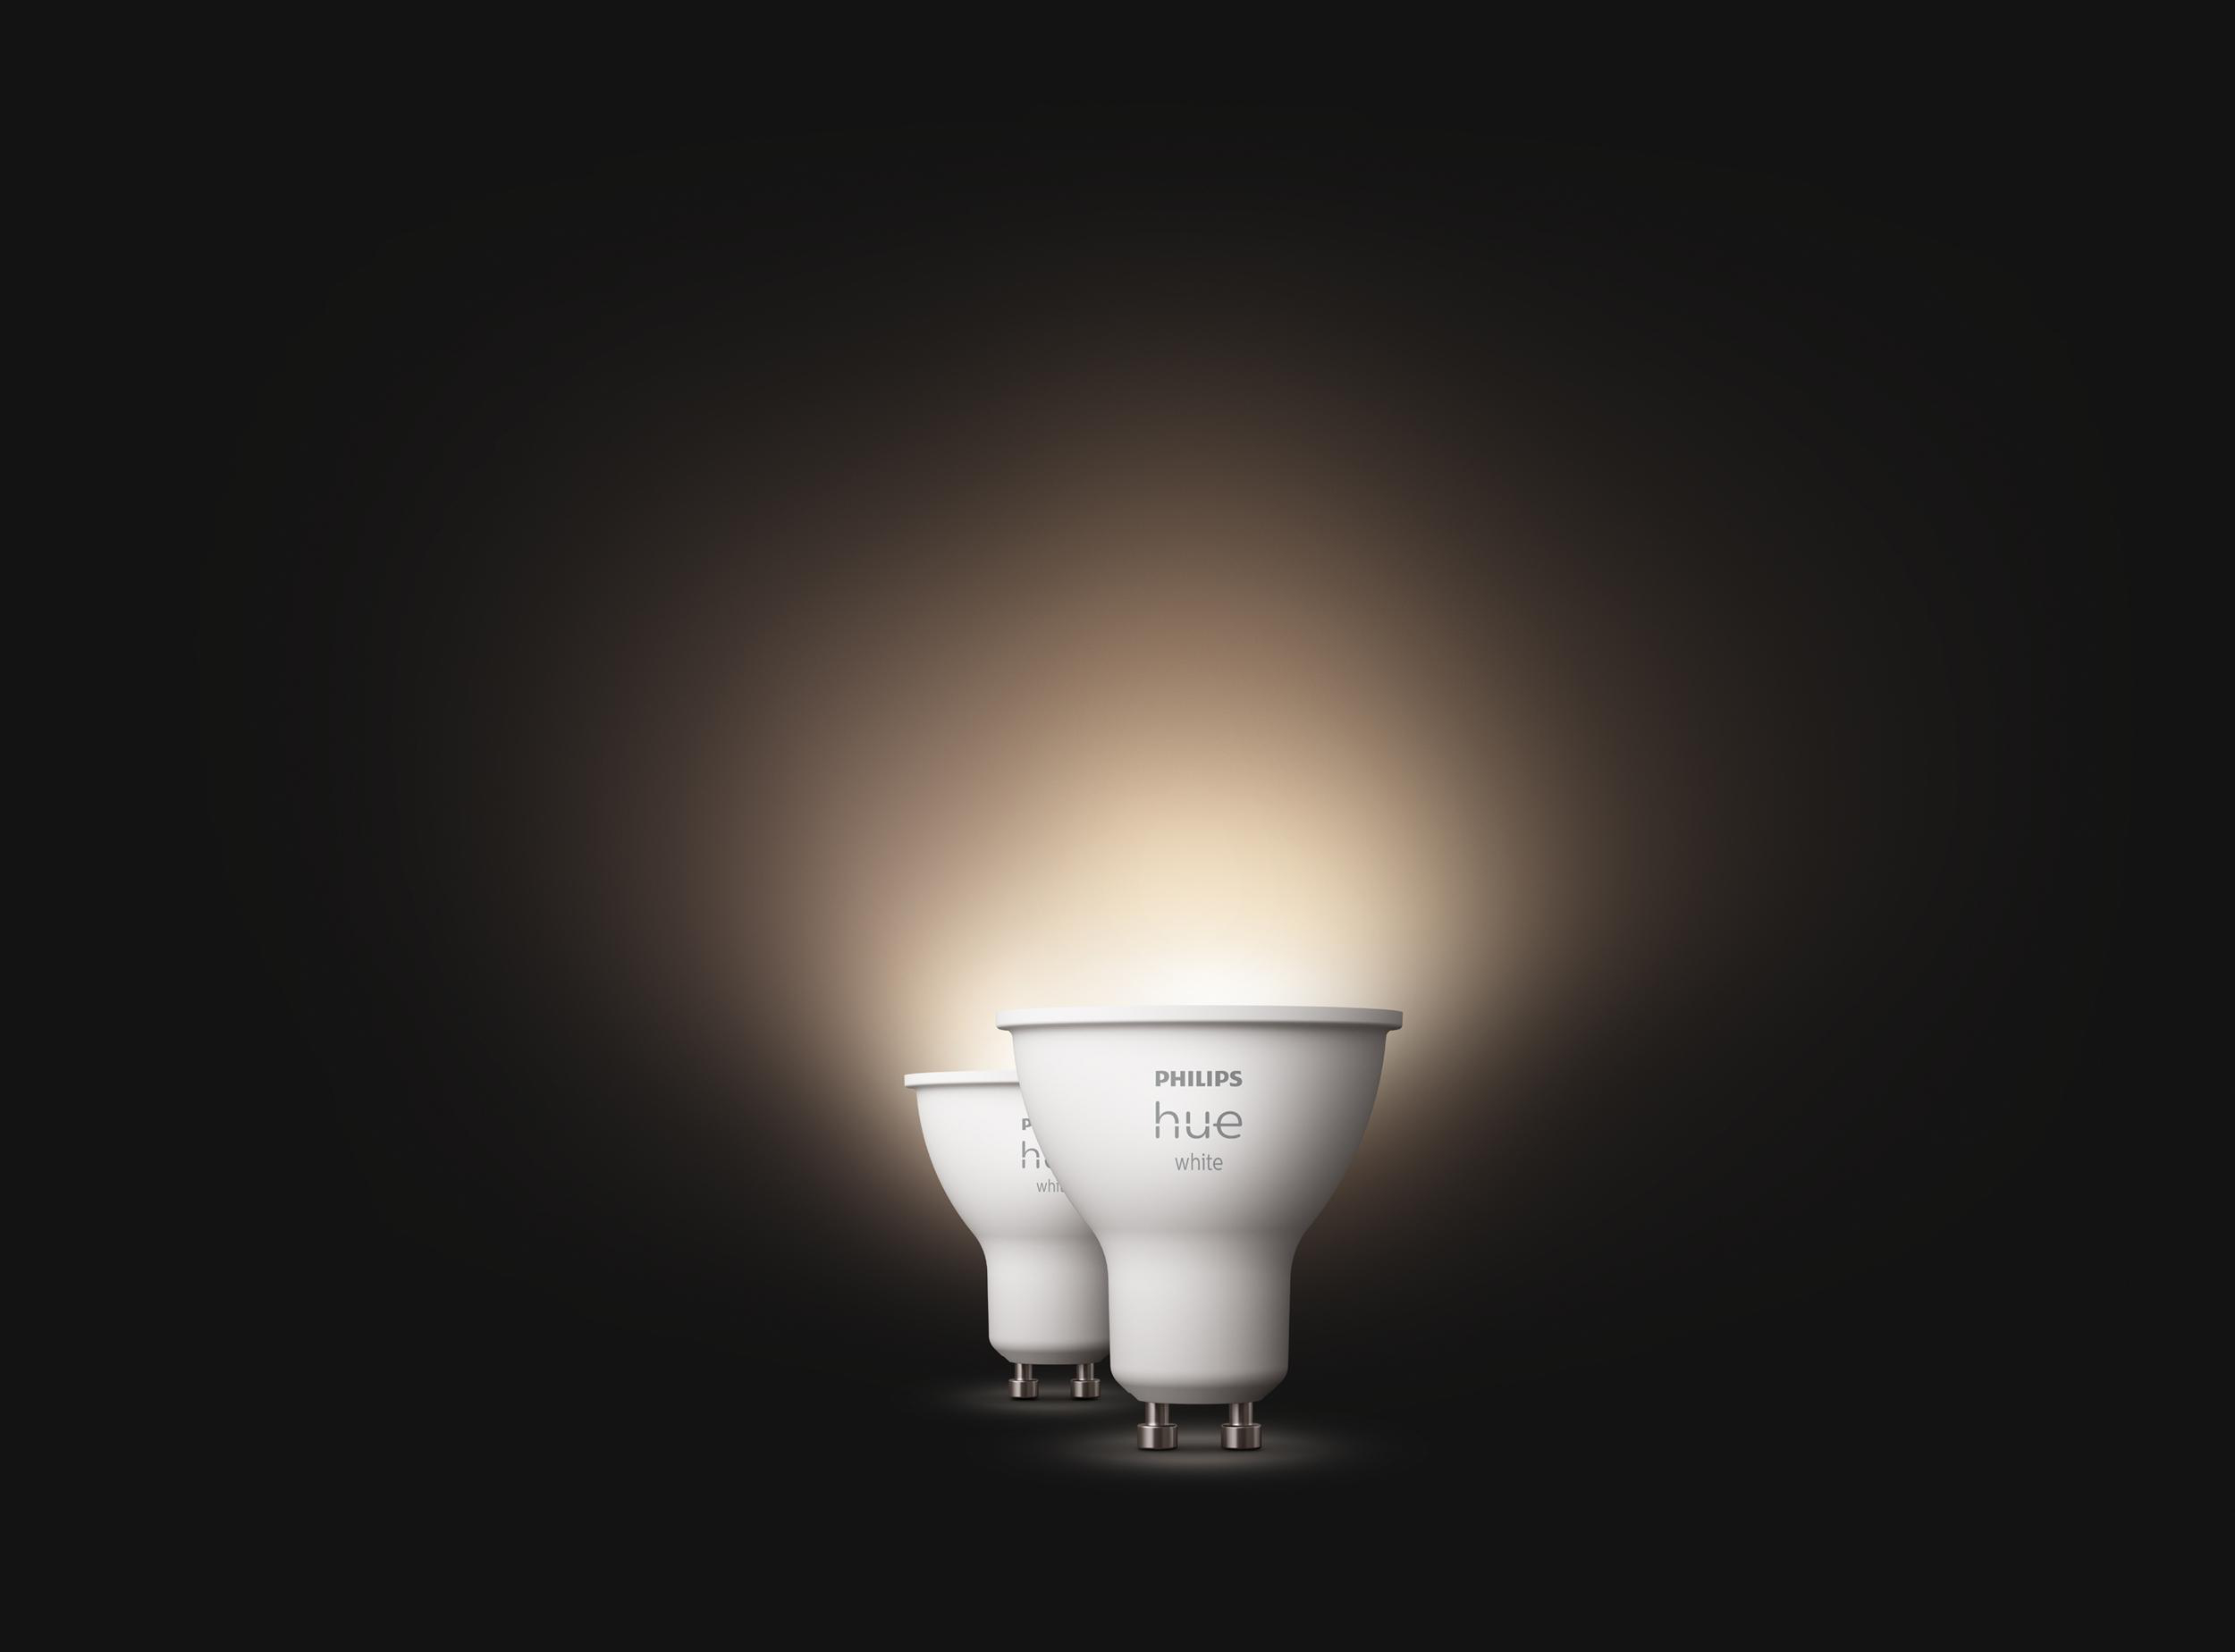 Doppelpack GU10 LED Lampe Warmweiß White Hue PHILIPS